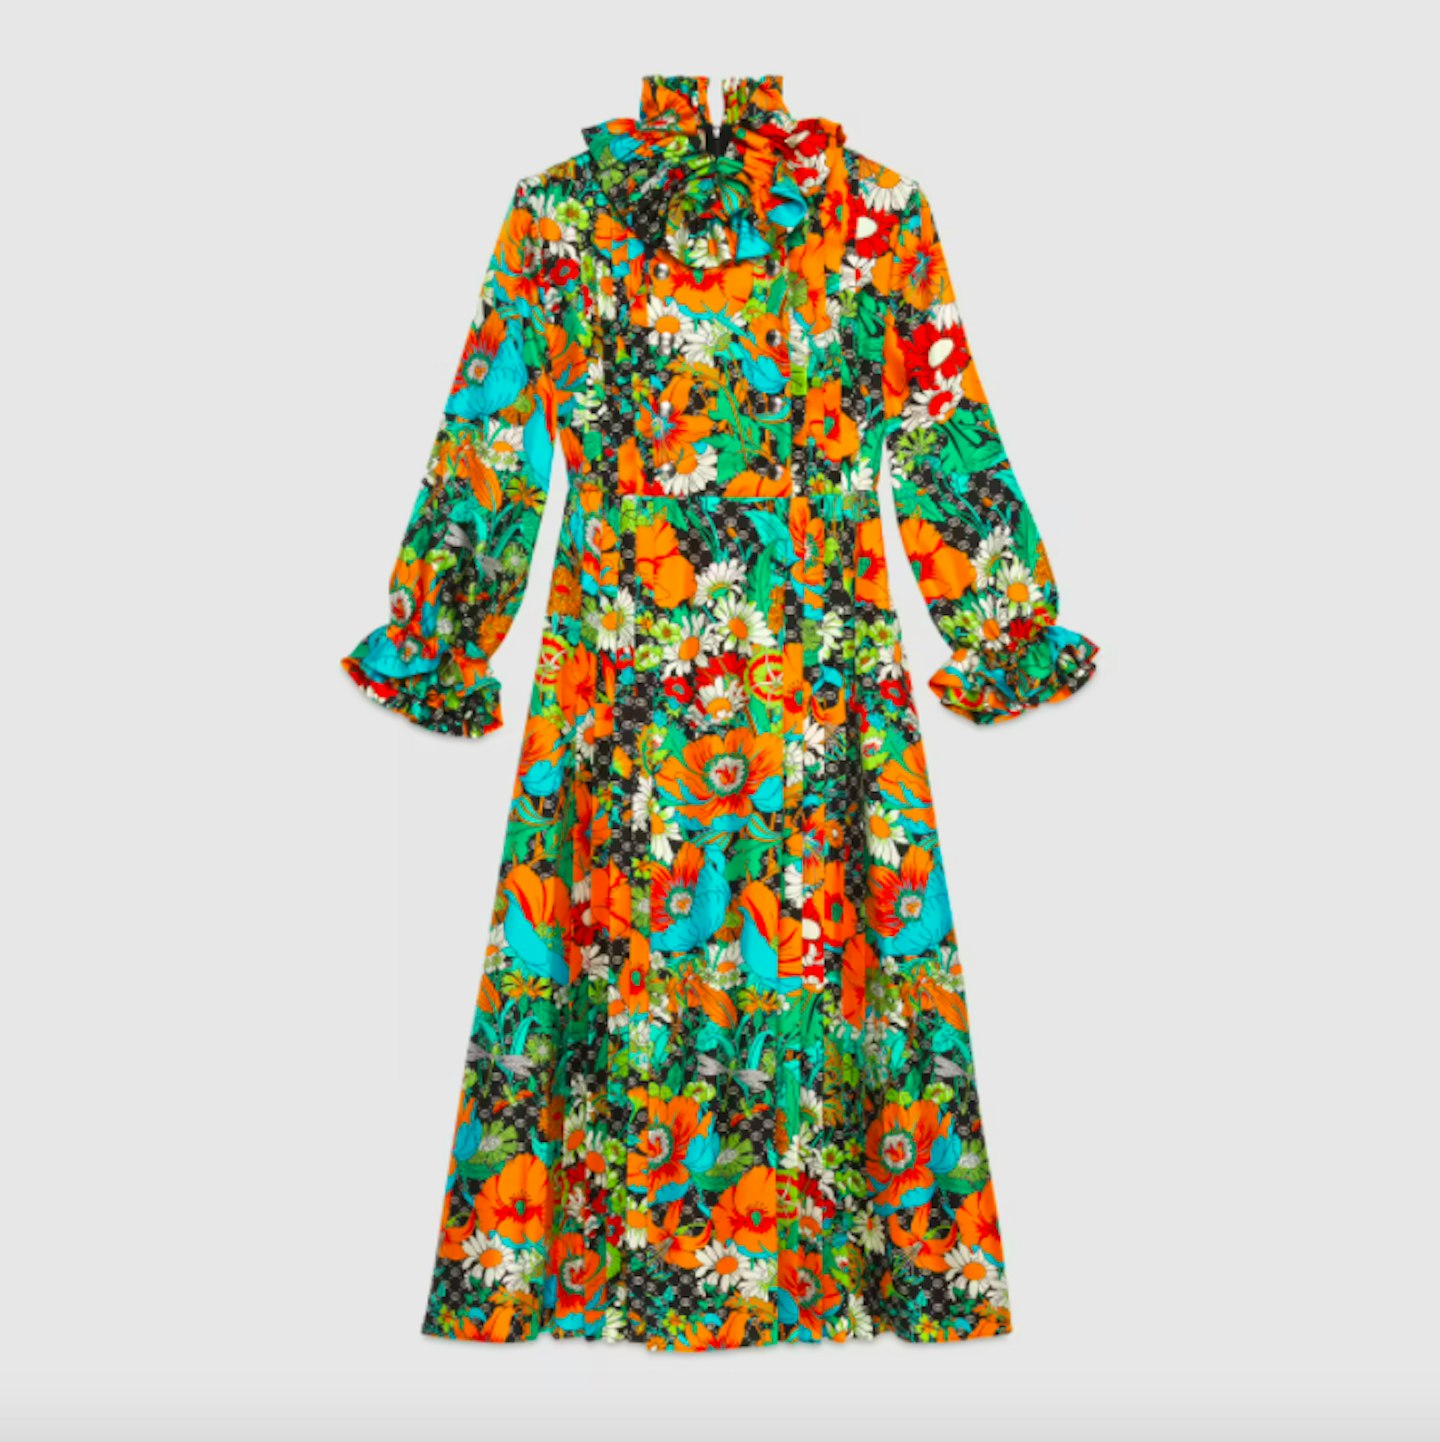 Dress, £2,700